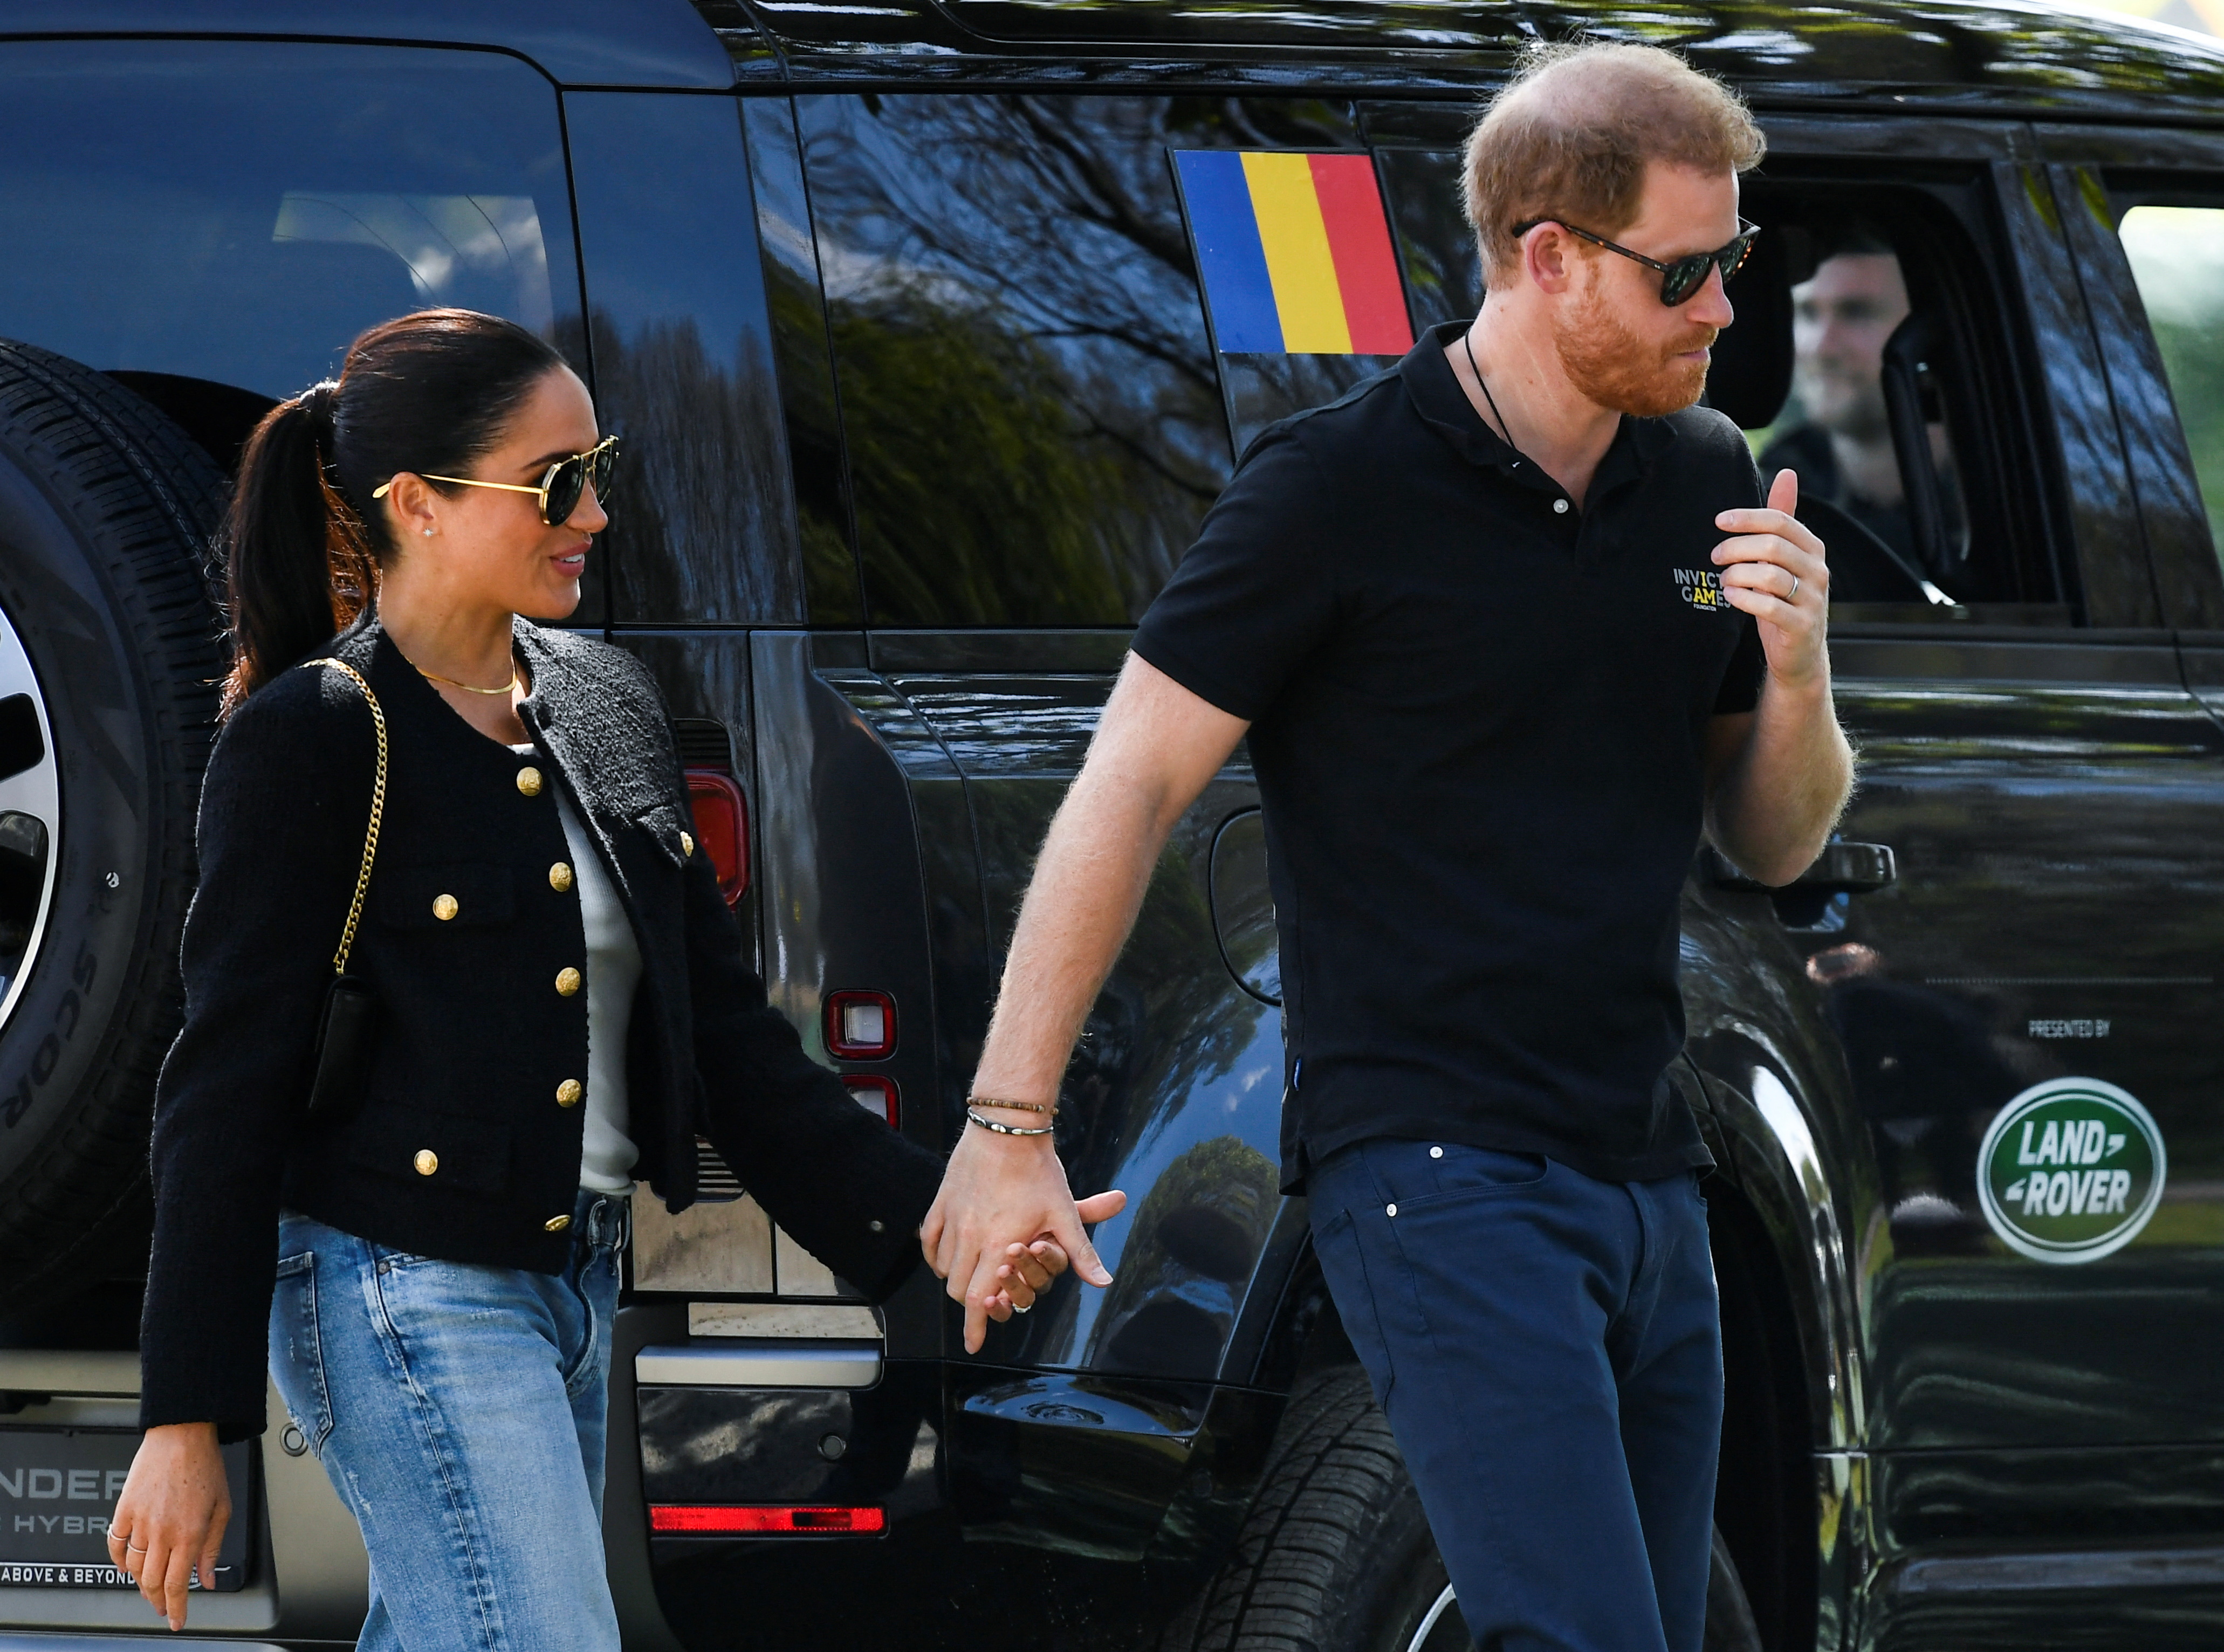 Desde que abandonaron sus deberes en la corona británica, la pareja se muestra con looks más urbanos y fuera del protocolo. REUTERS/Piroschka Van De Wouw